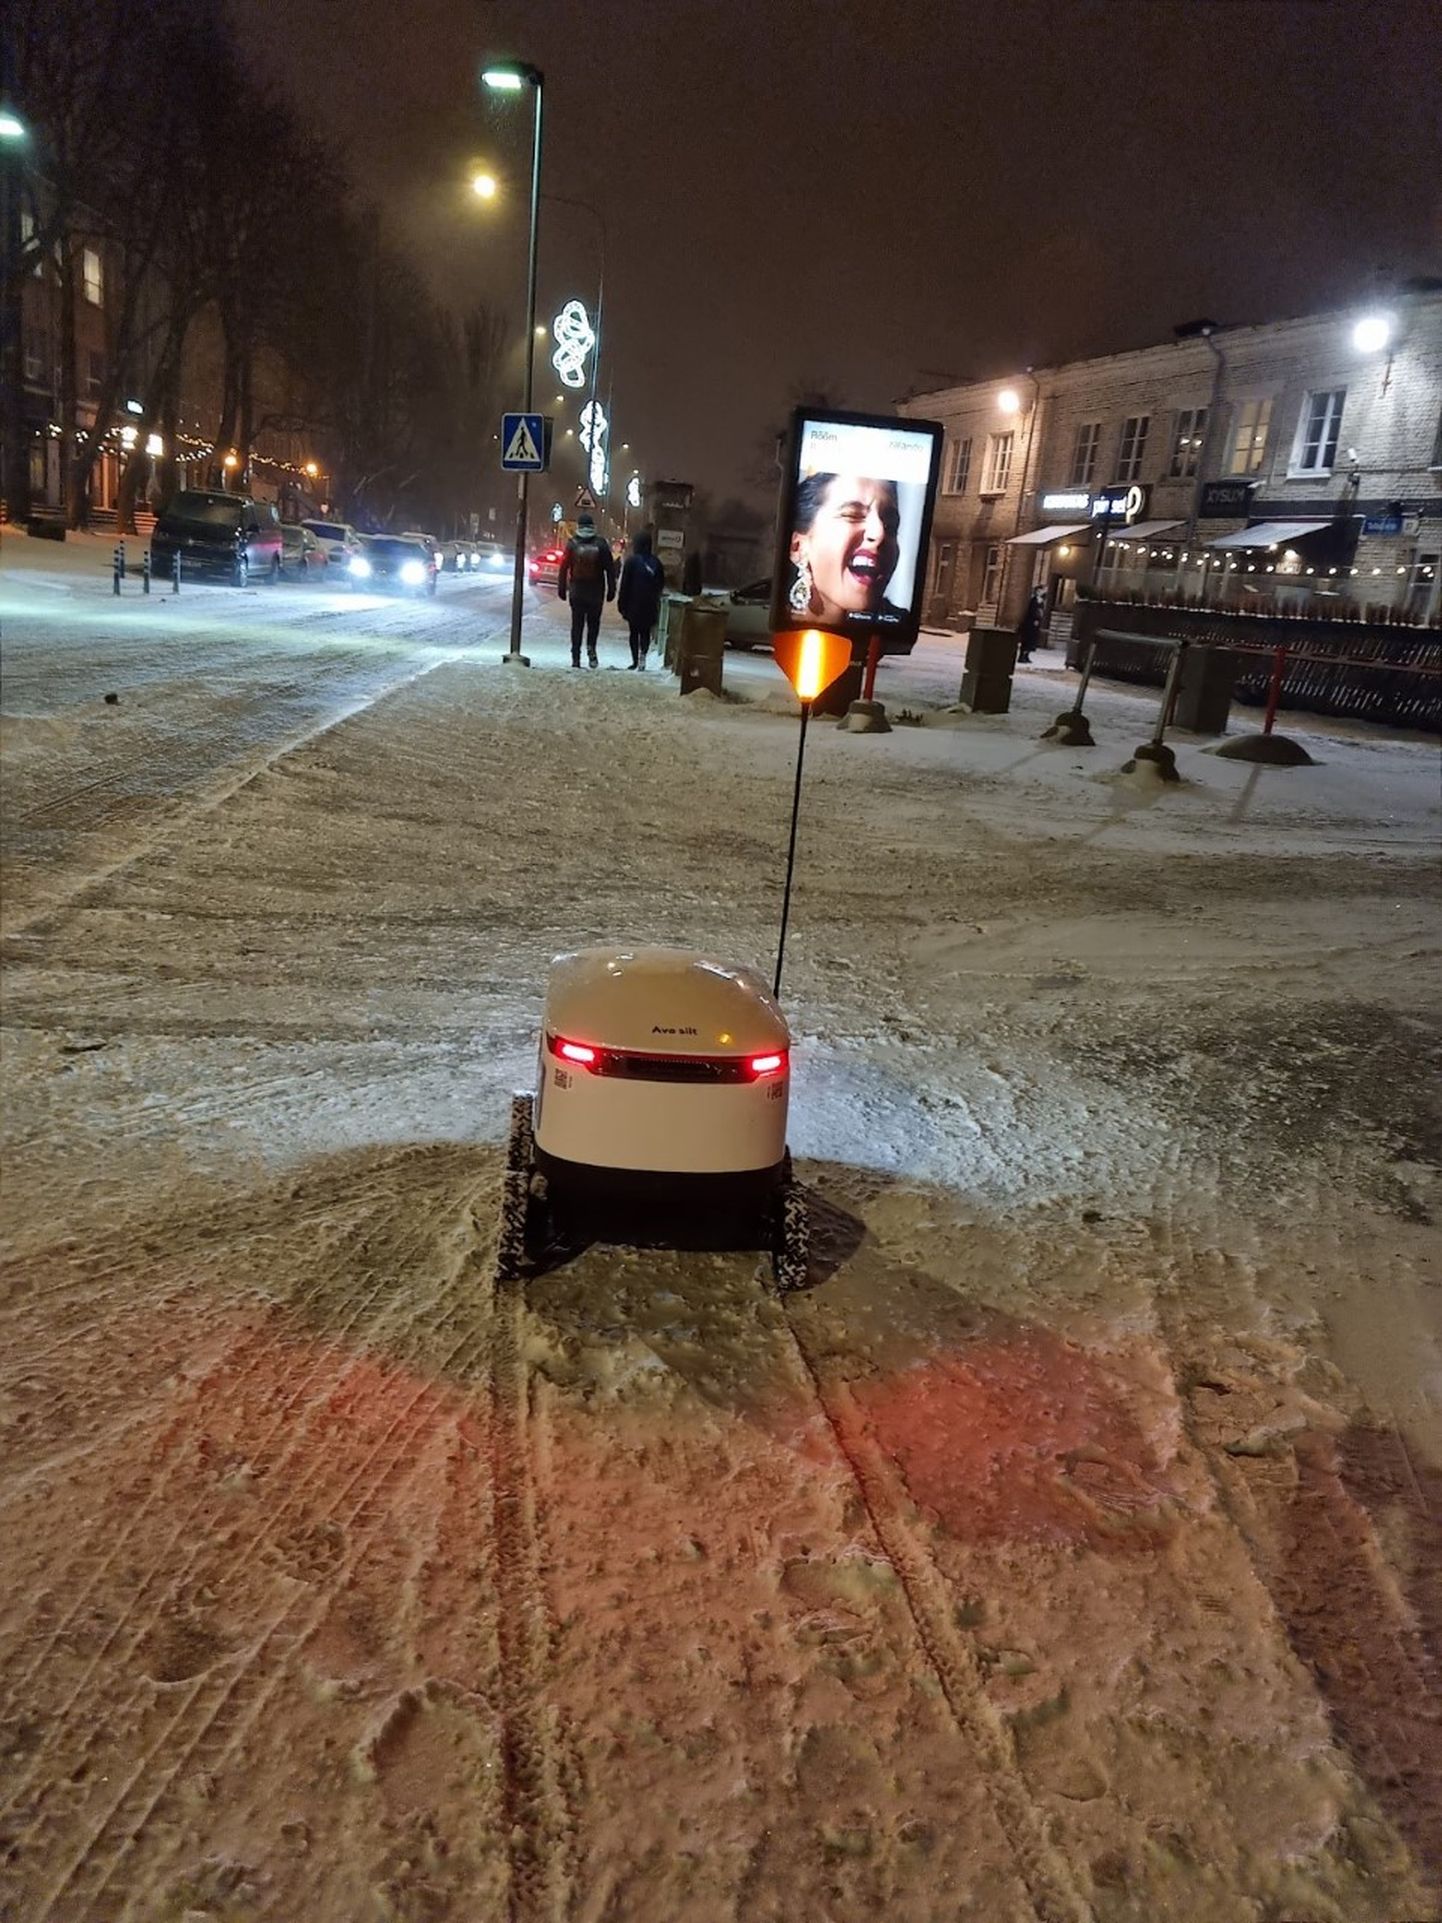 Tallinnas Telliskivi tänaval oli 29. novembril näha pakirobotit lumes. Ristiku tänaval oli neid lumes ukerdamas lausa seitse